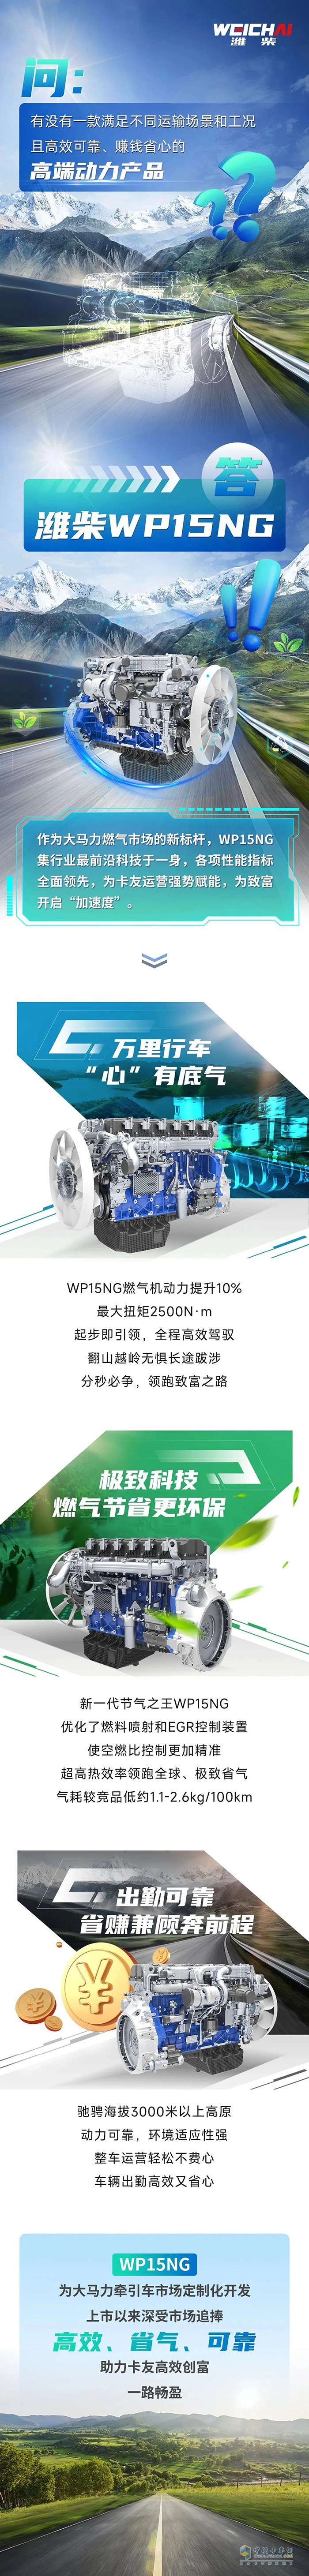 潍柴WP15NG大马力燃气明星动力为致富开启加速度